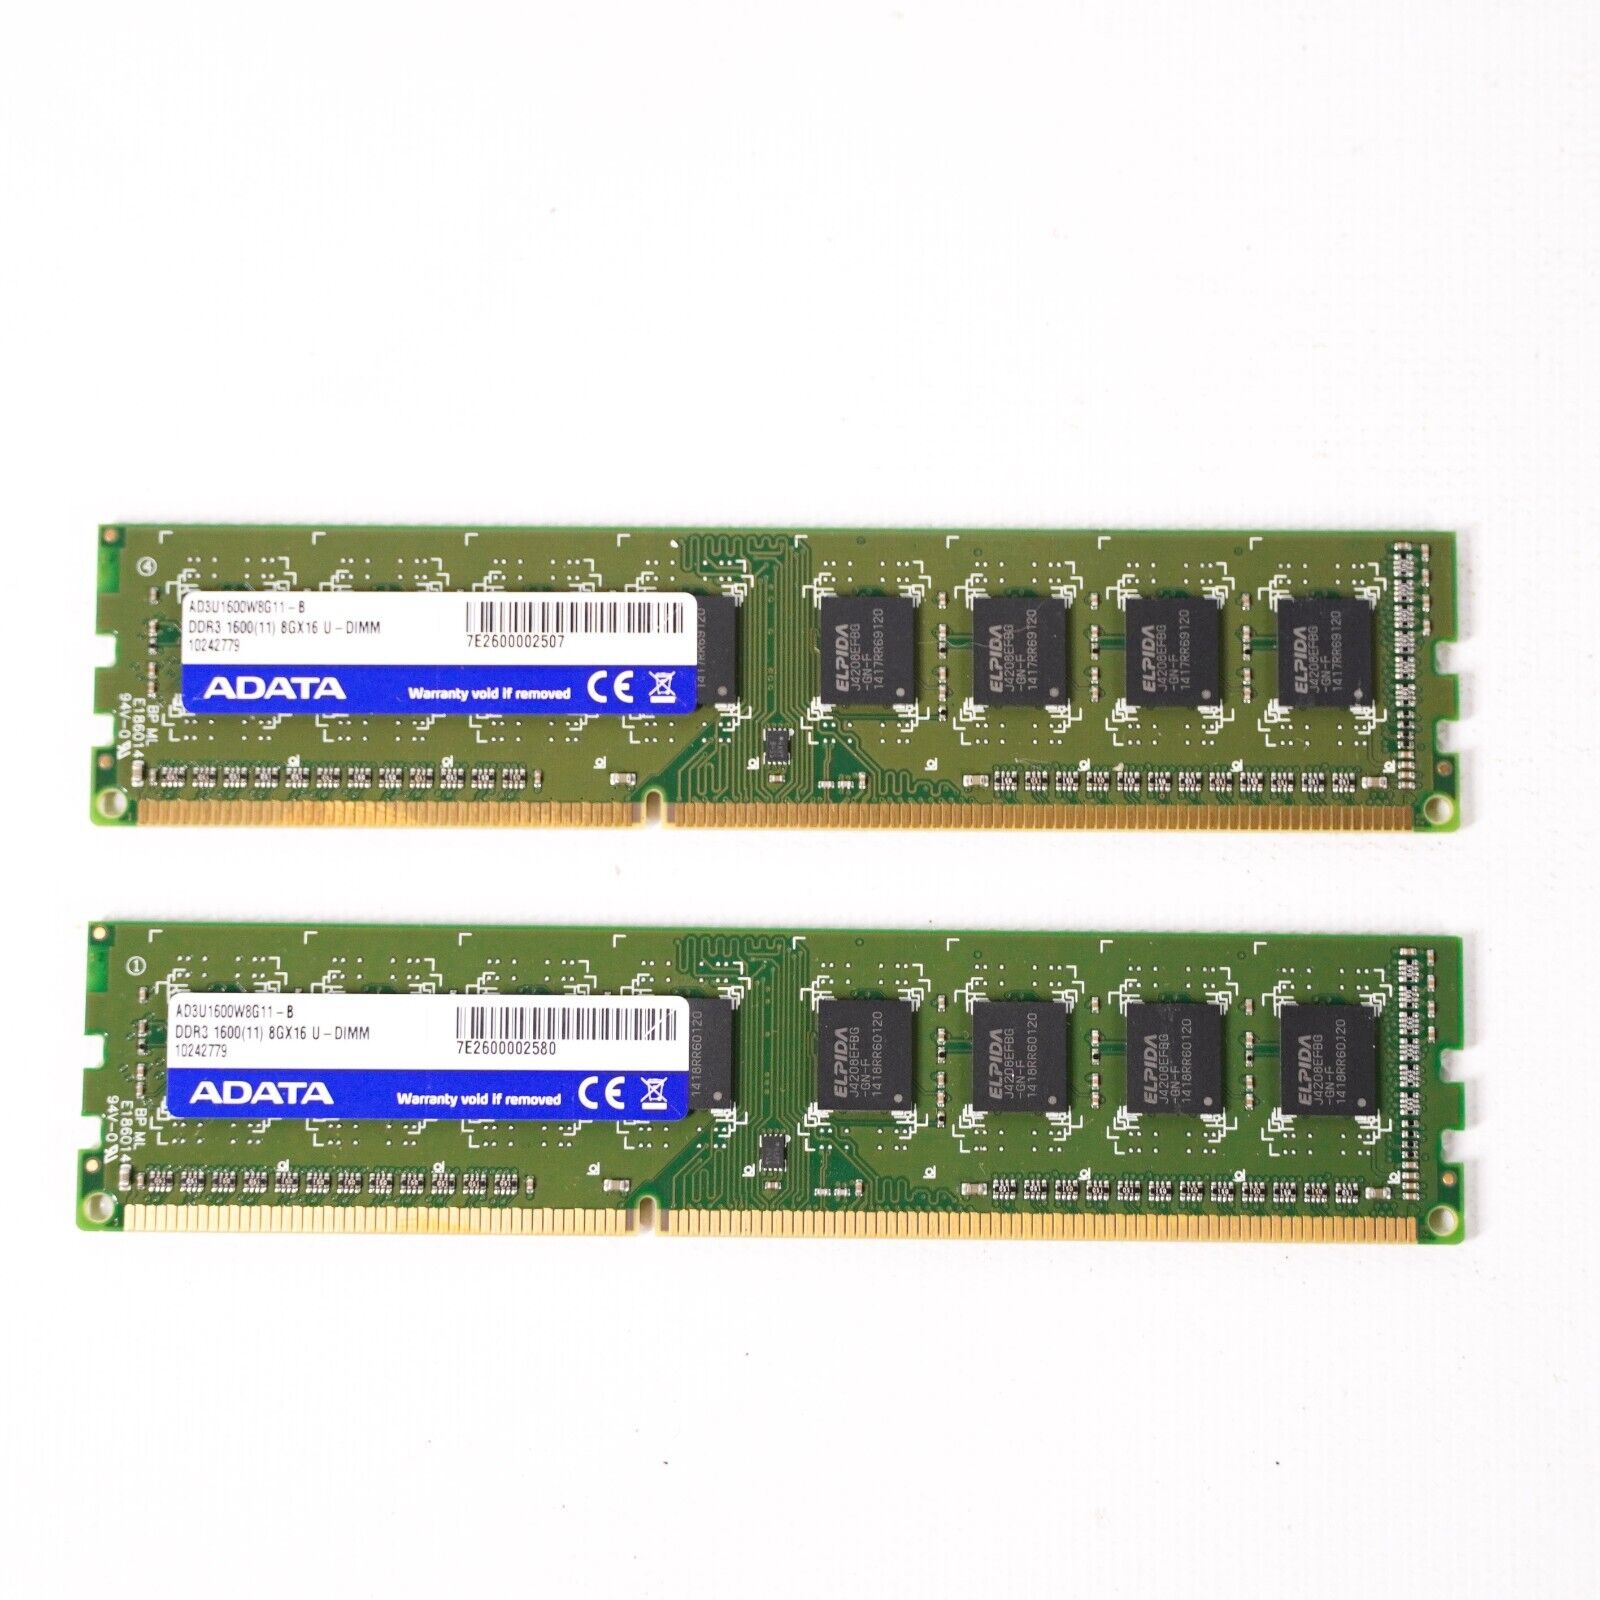 ADATA AD3U 1600W8G11 - B - DDR3 1600/11) 8GX16 U - DIMM RAM Memory Sticks x2